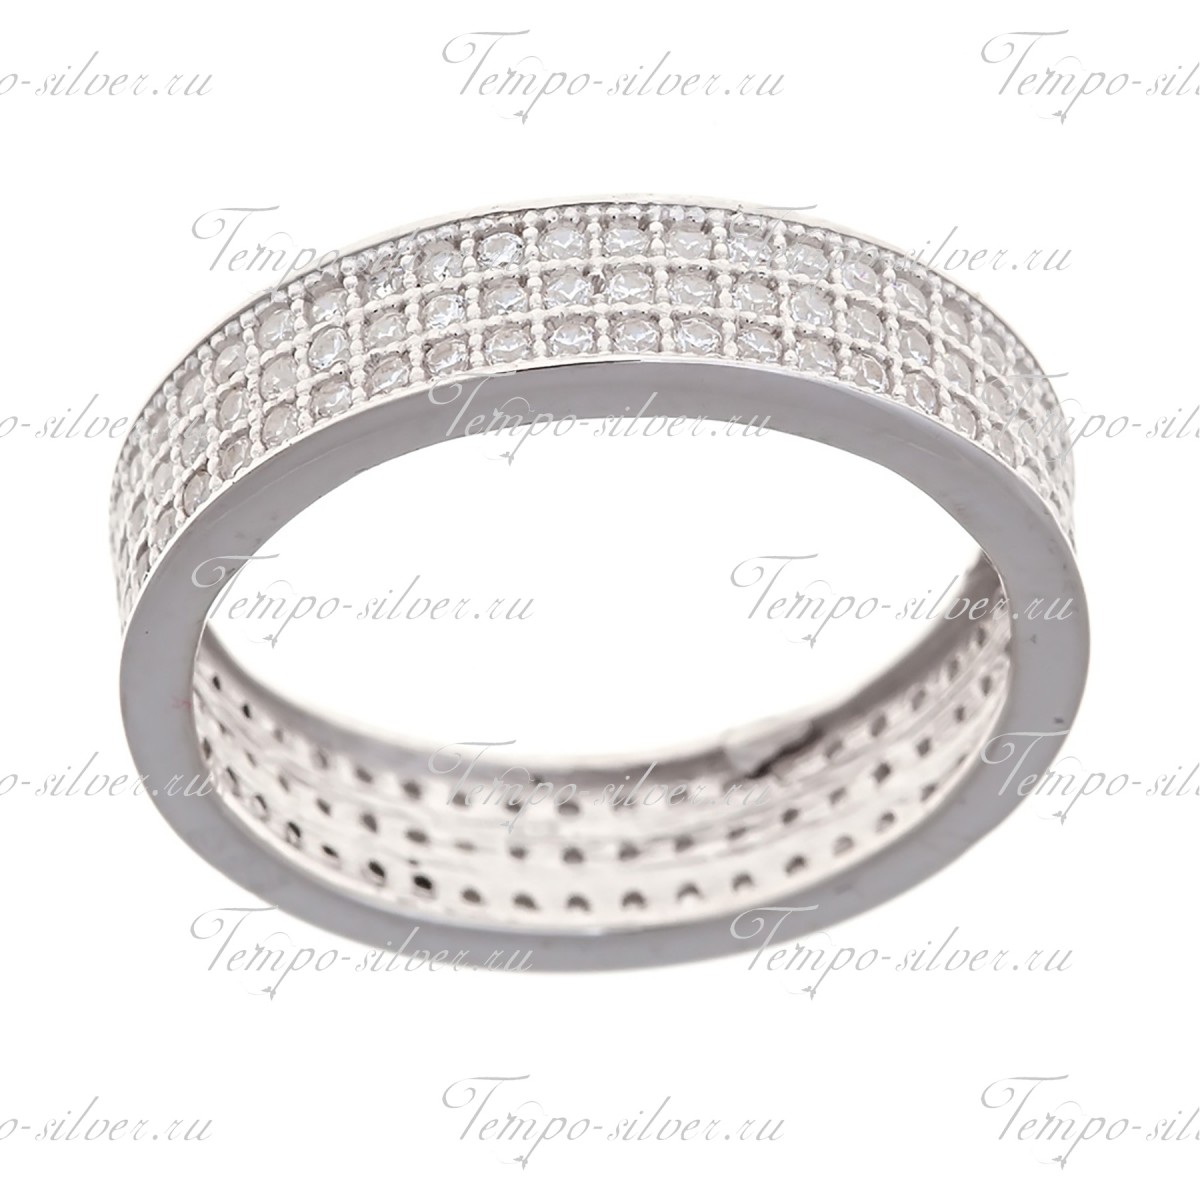 Кольцо из серебра обручального типа, полностью усыпанное белыми цирконами